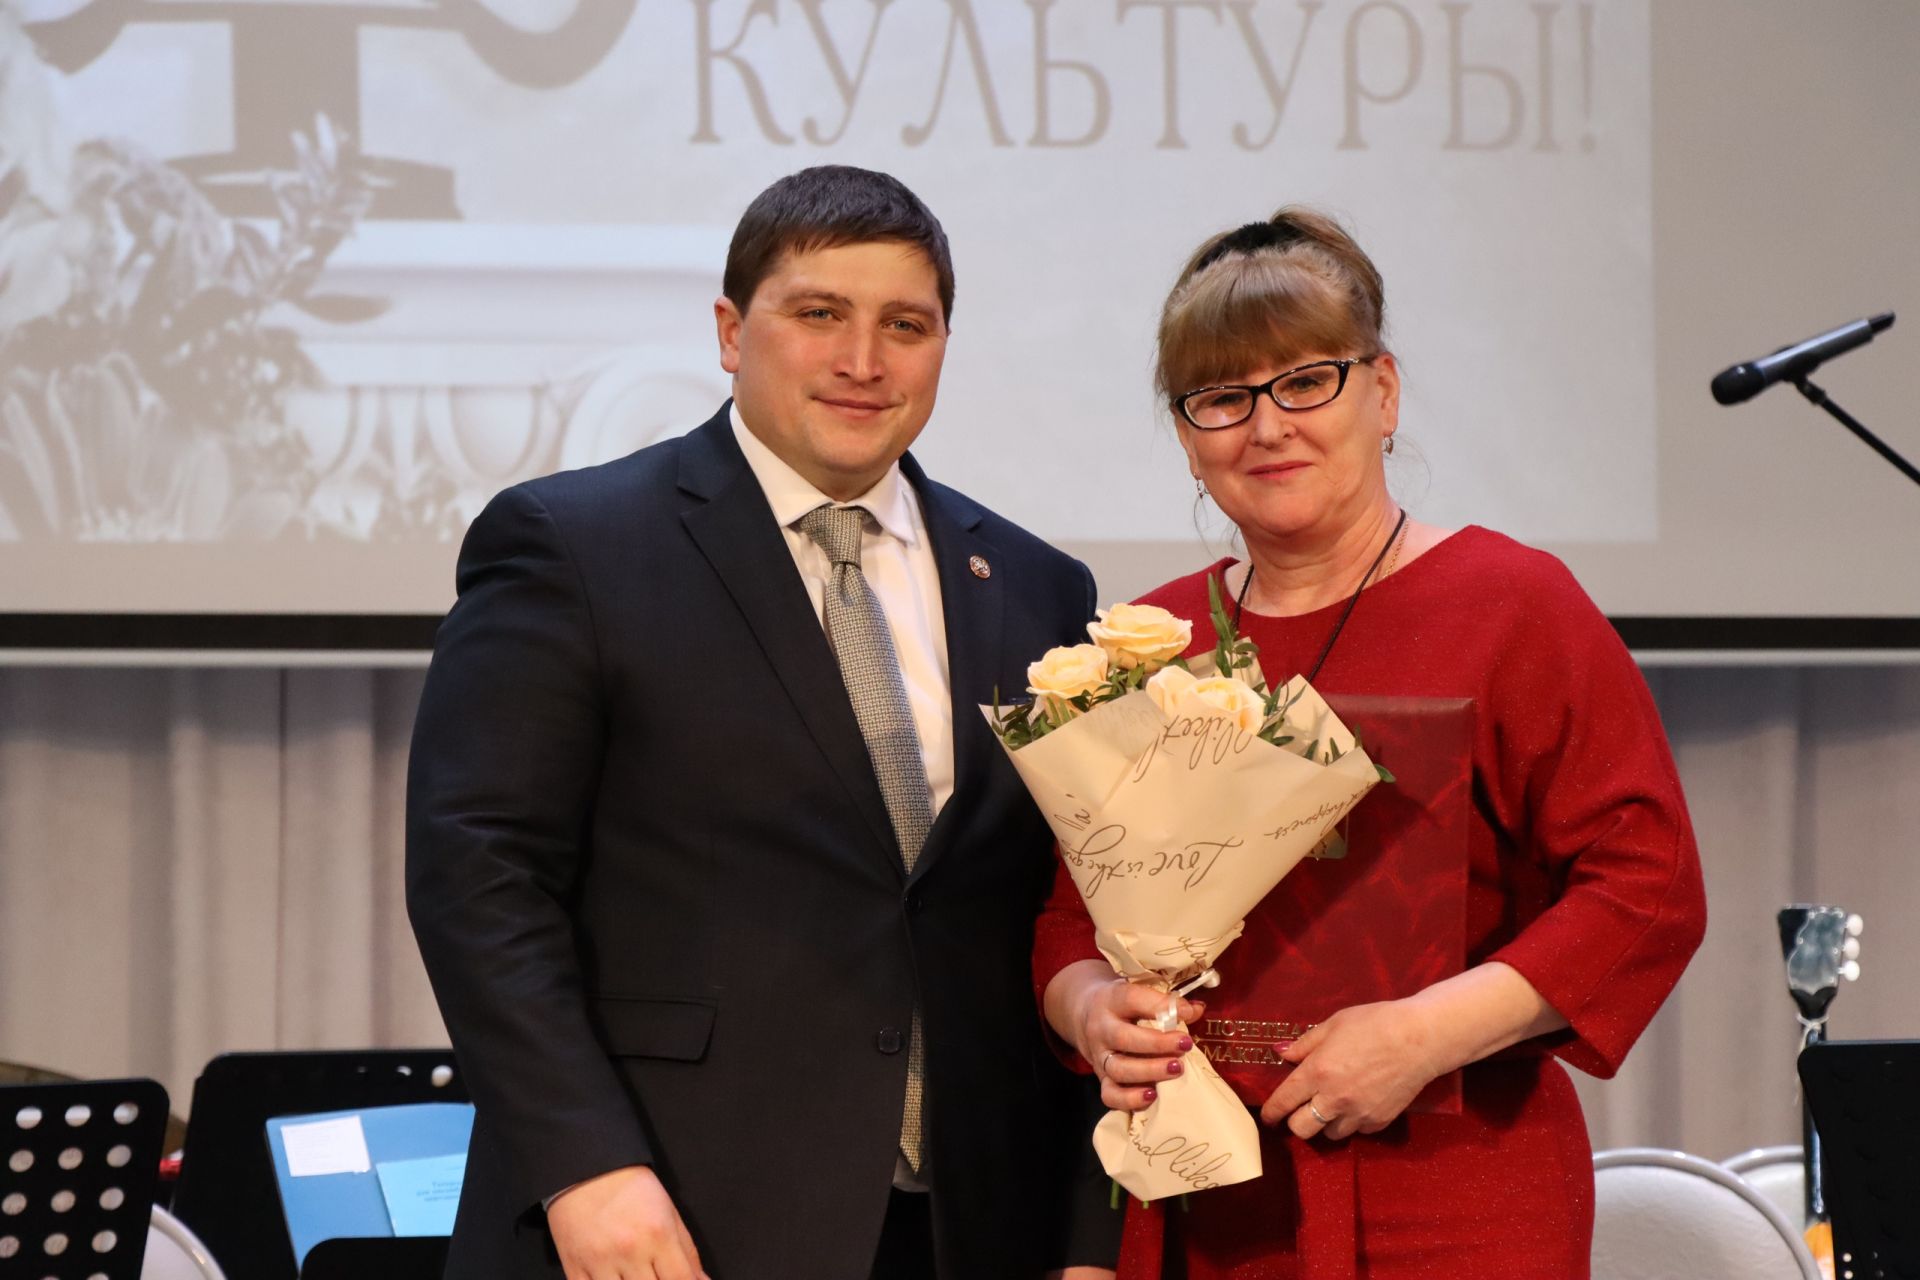 Работникам культуры Менделеевска вручили заслуженные награды